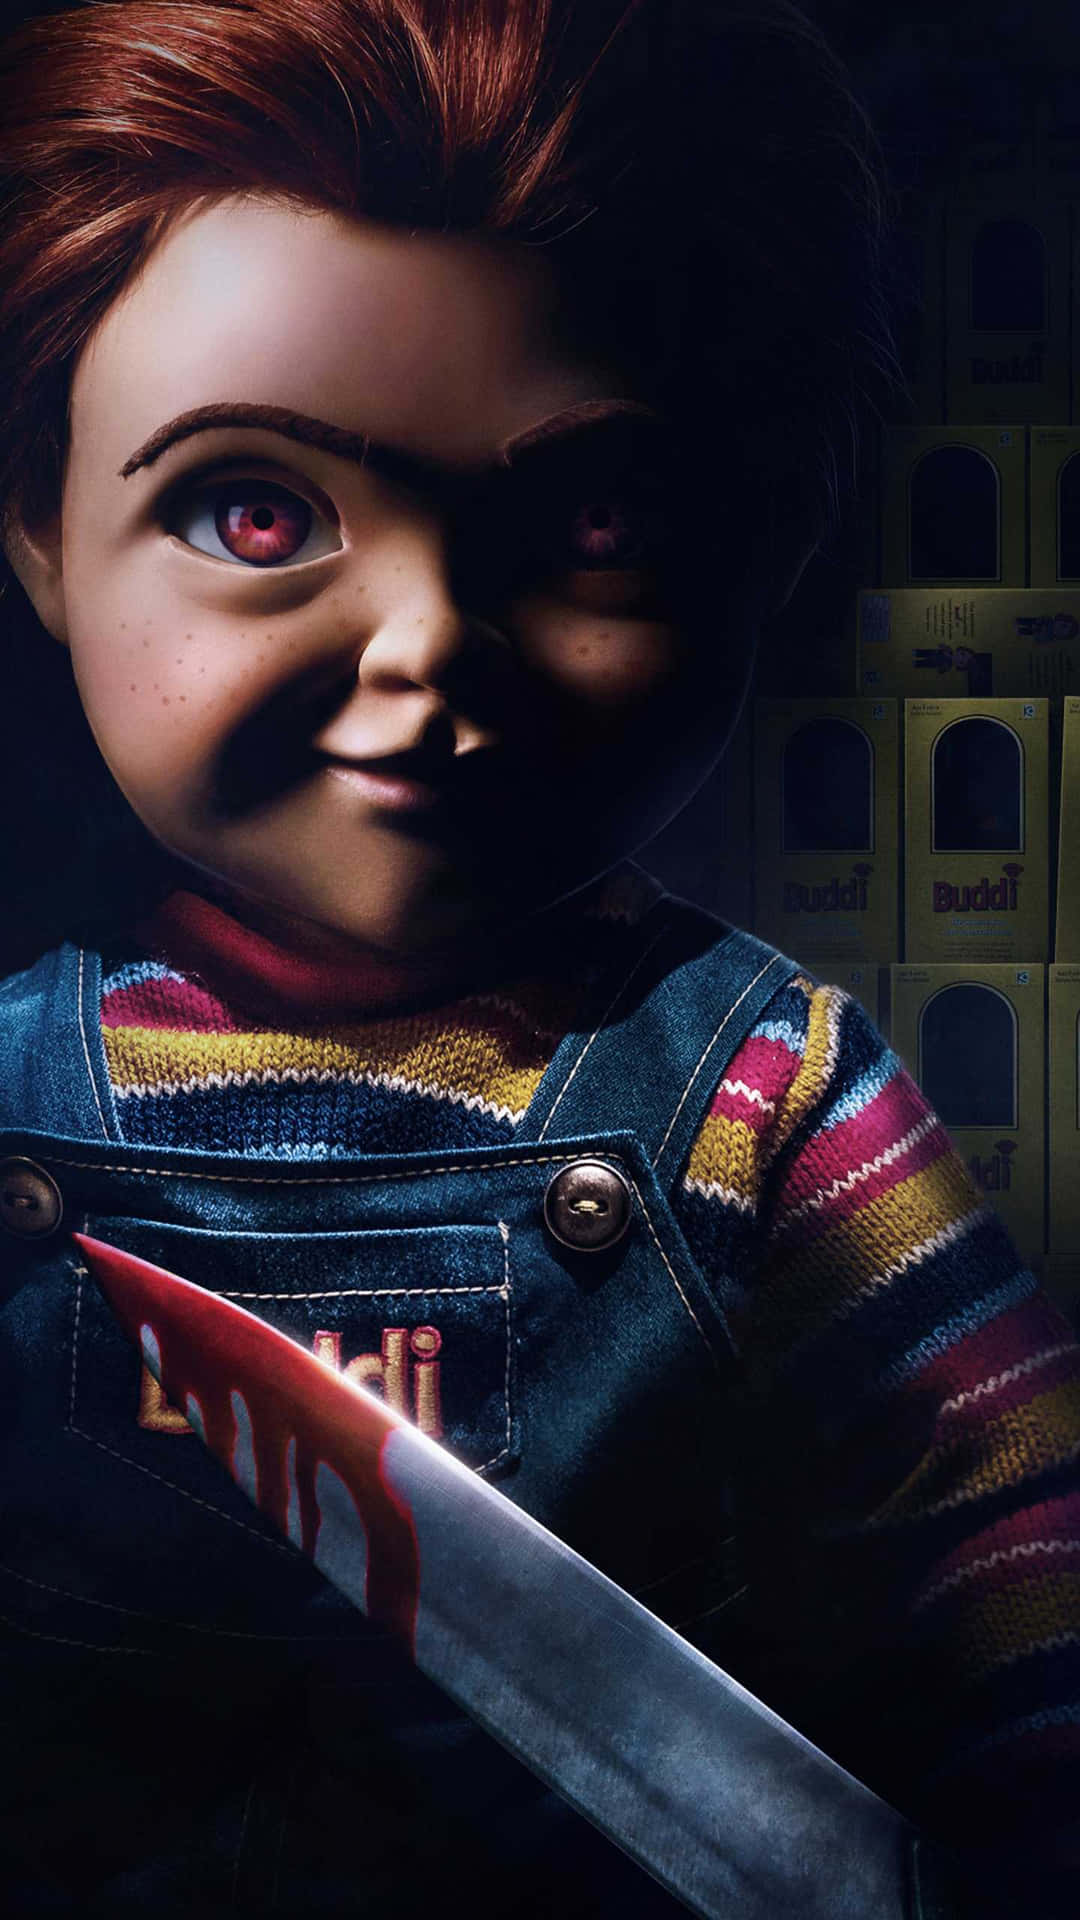 Chucky filmplakat med en skræmmende klovn, der holder et kniv Wallpaper